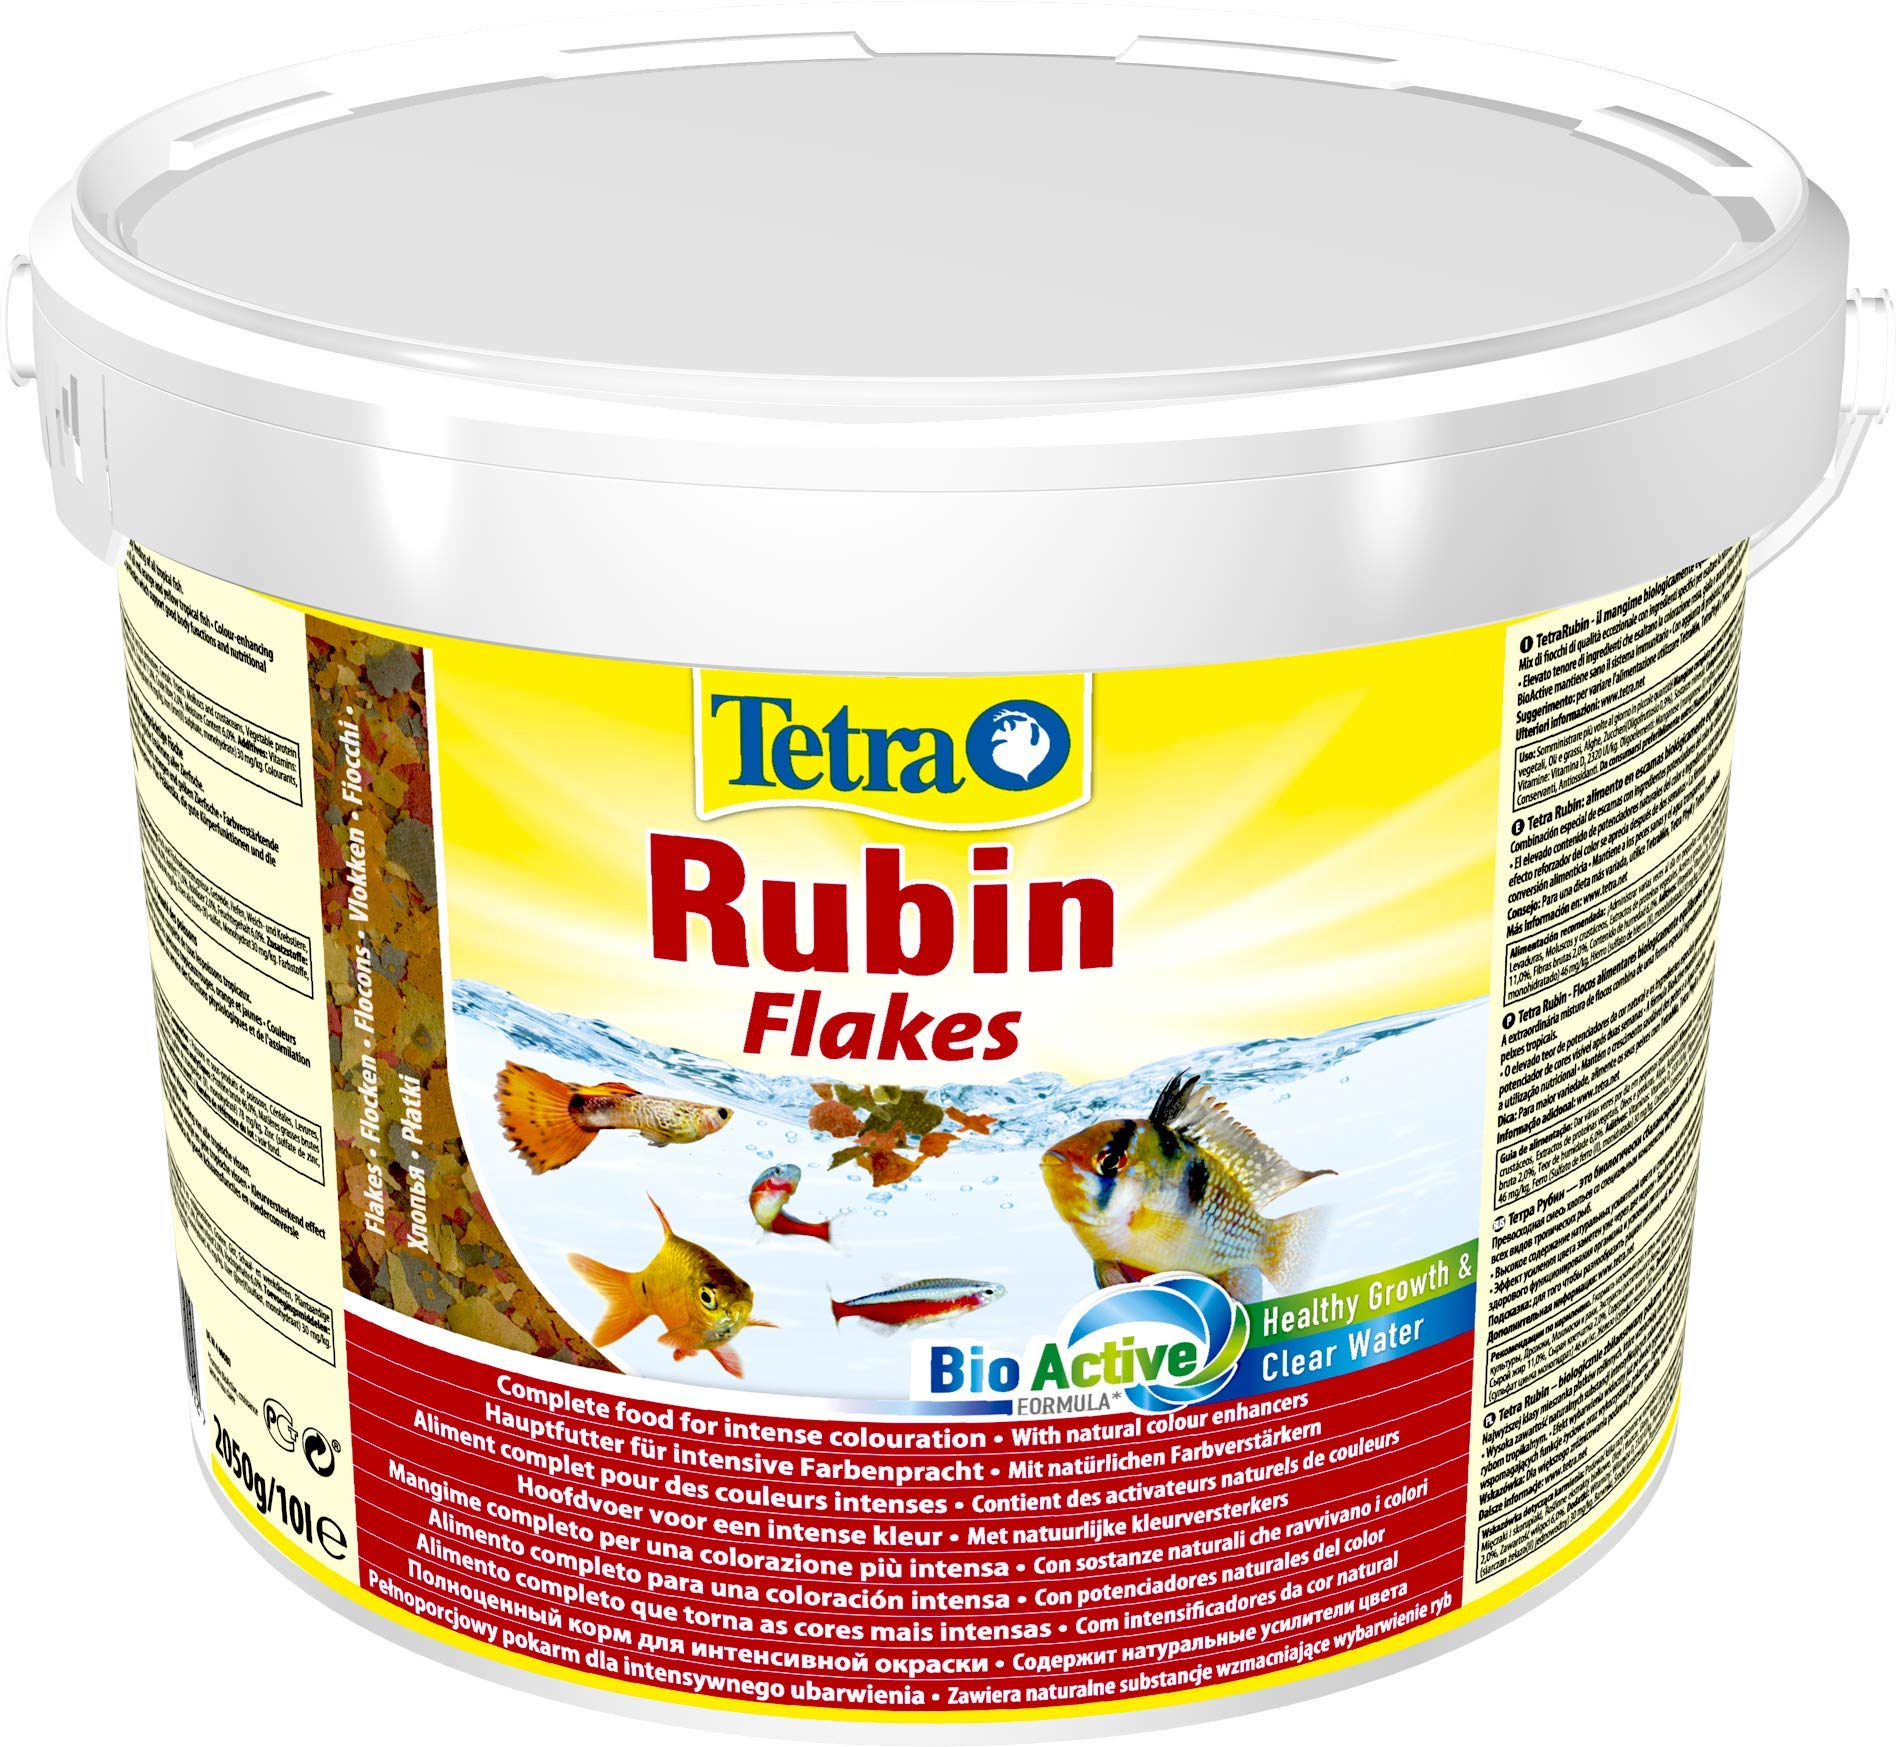 Tetra Rubin Flakes - Fischfutter in Flockenform mit natürlichen Farbverstärkern, unterstützt eine intensive Farbenpracht der Fische, 10 Liter Eimer